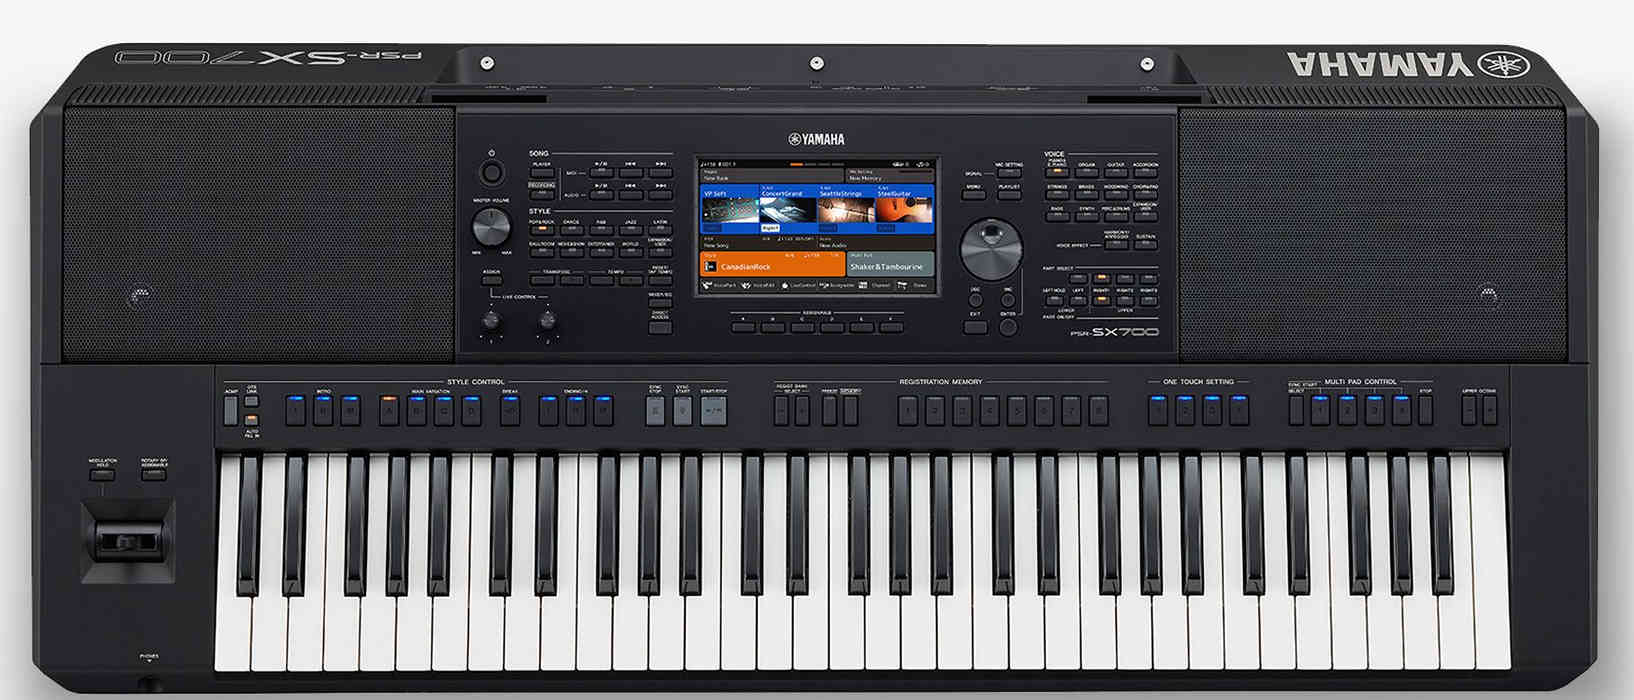 Style Dangdut Keyboard Yamaha Psr S550